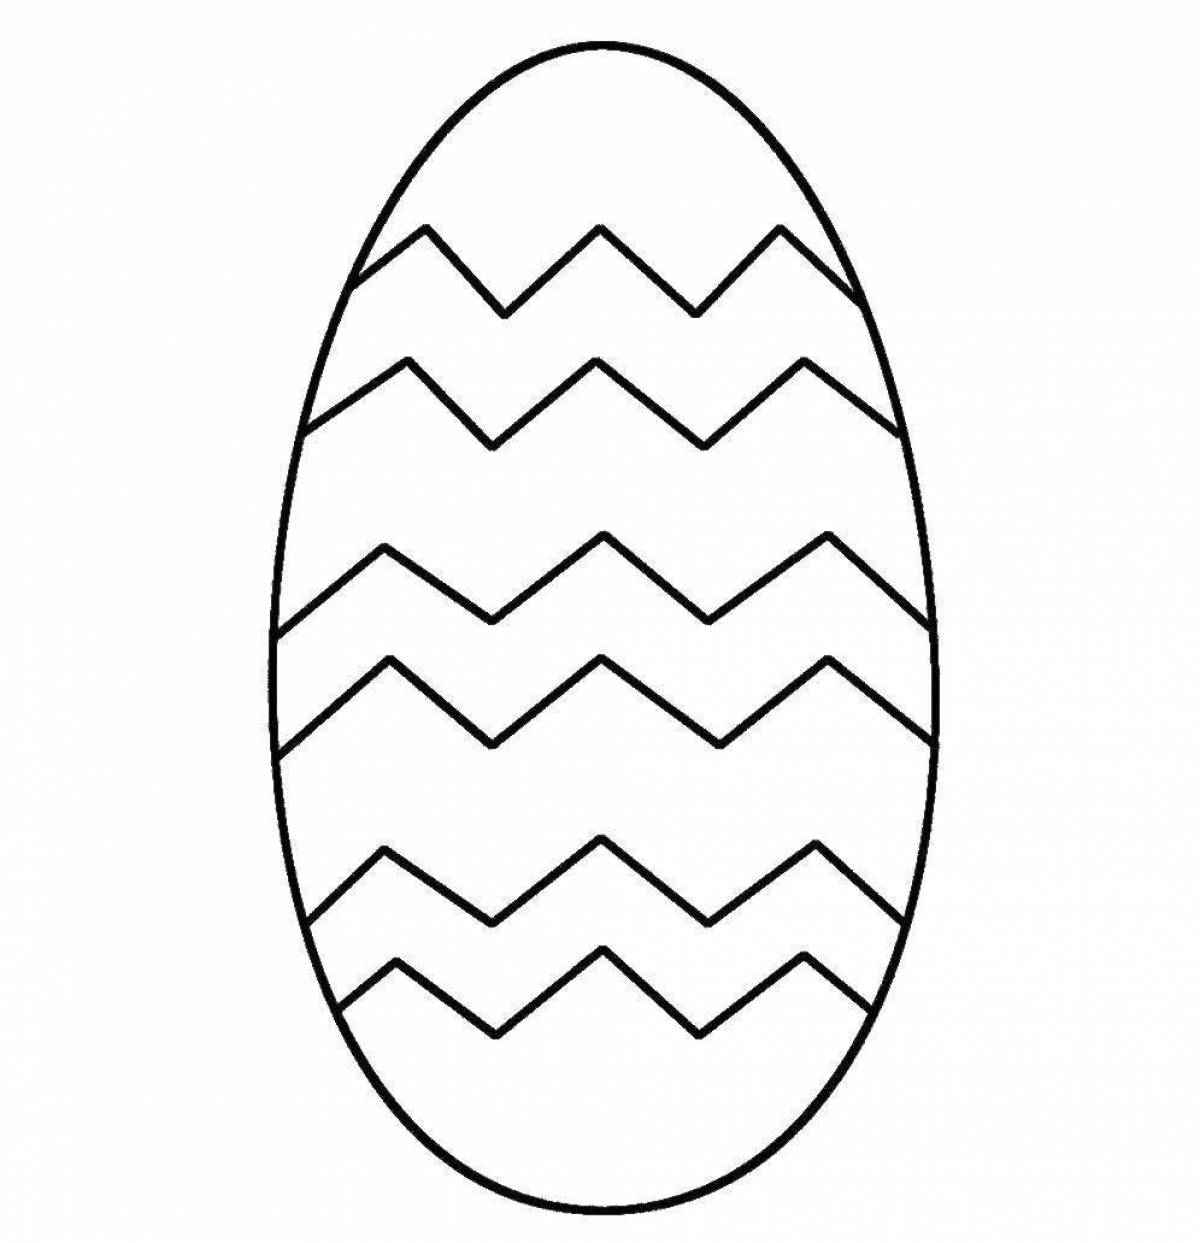 Яйцо шаблон для детей. Пасхальное яйцо раскраска. Трафареты яиц для раскрашивания. Трафарет яйцо пасхальное. Яйцо раскраска для детей.